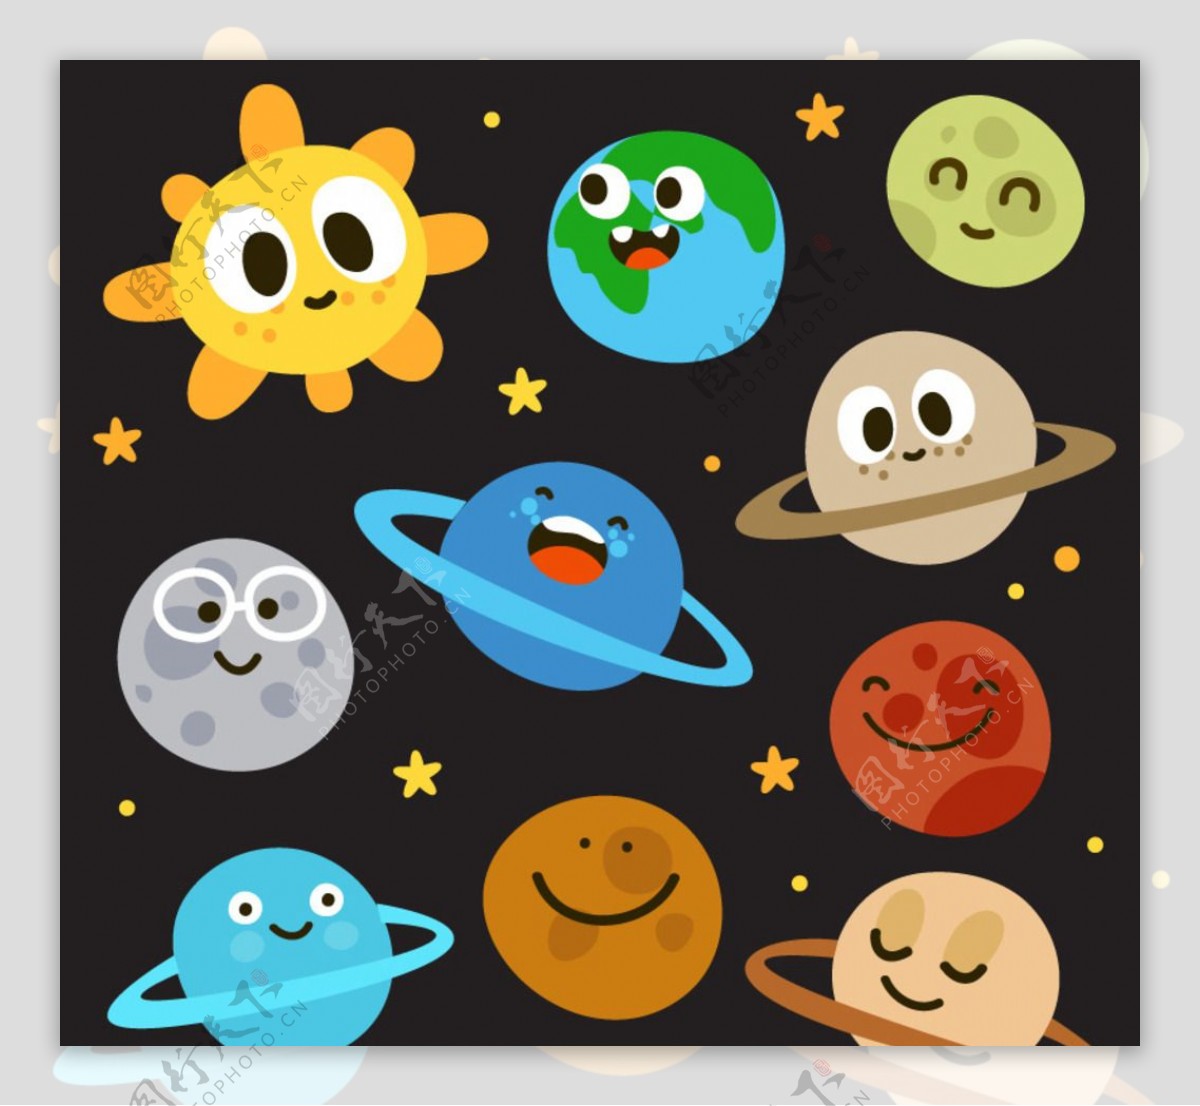 卡通太阳和九大行星